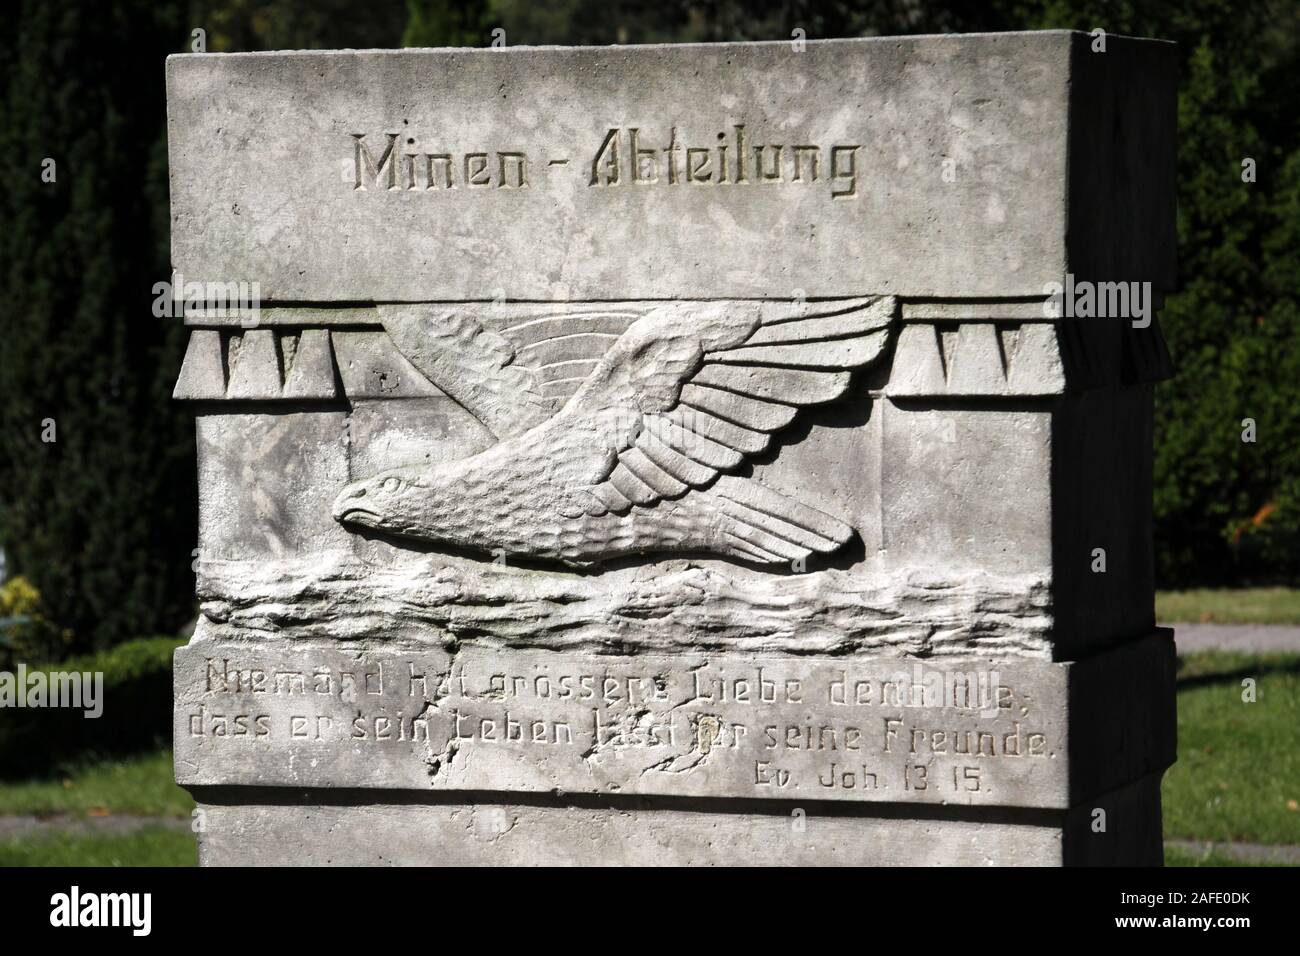 Gedenkstein Minen-Abteilung in Cuxhaven Foto Stock